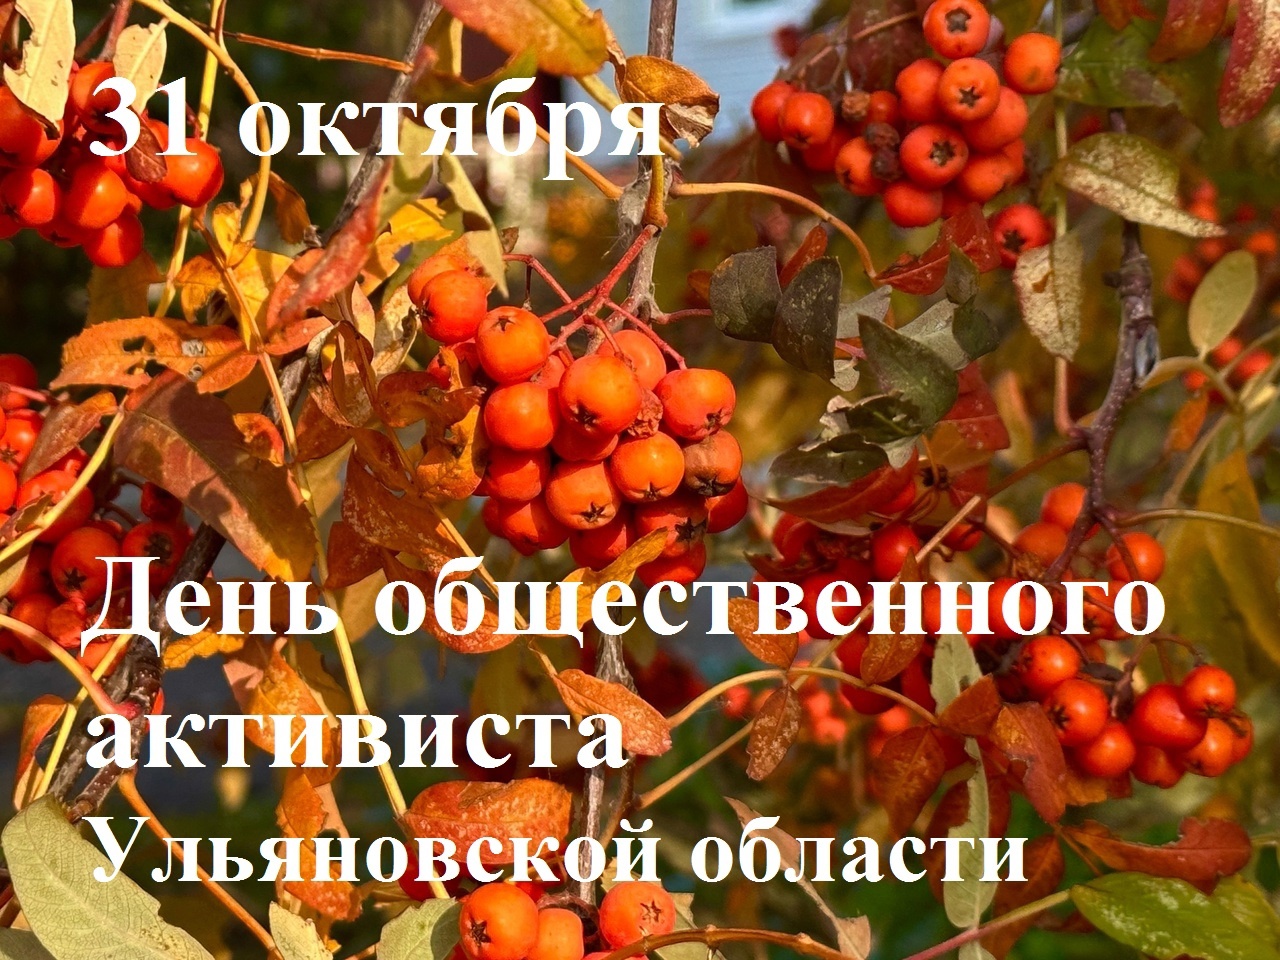 31 октября - День общественного активиста в Ульяновской области.